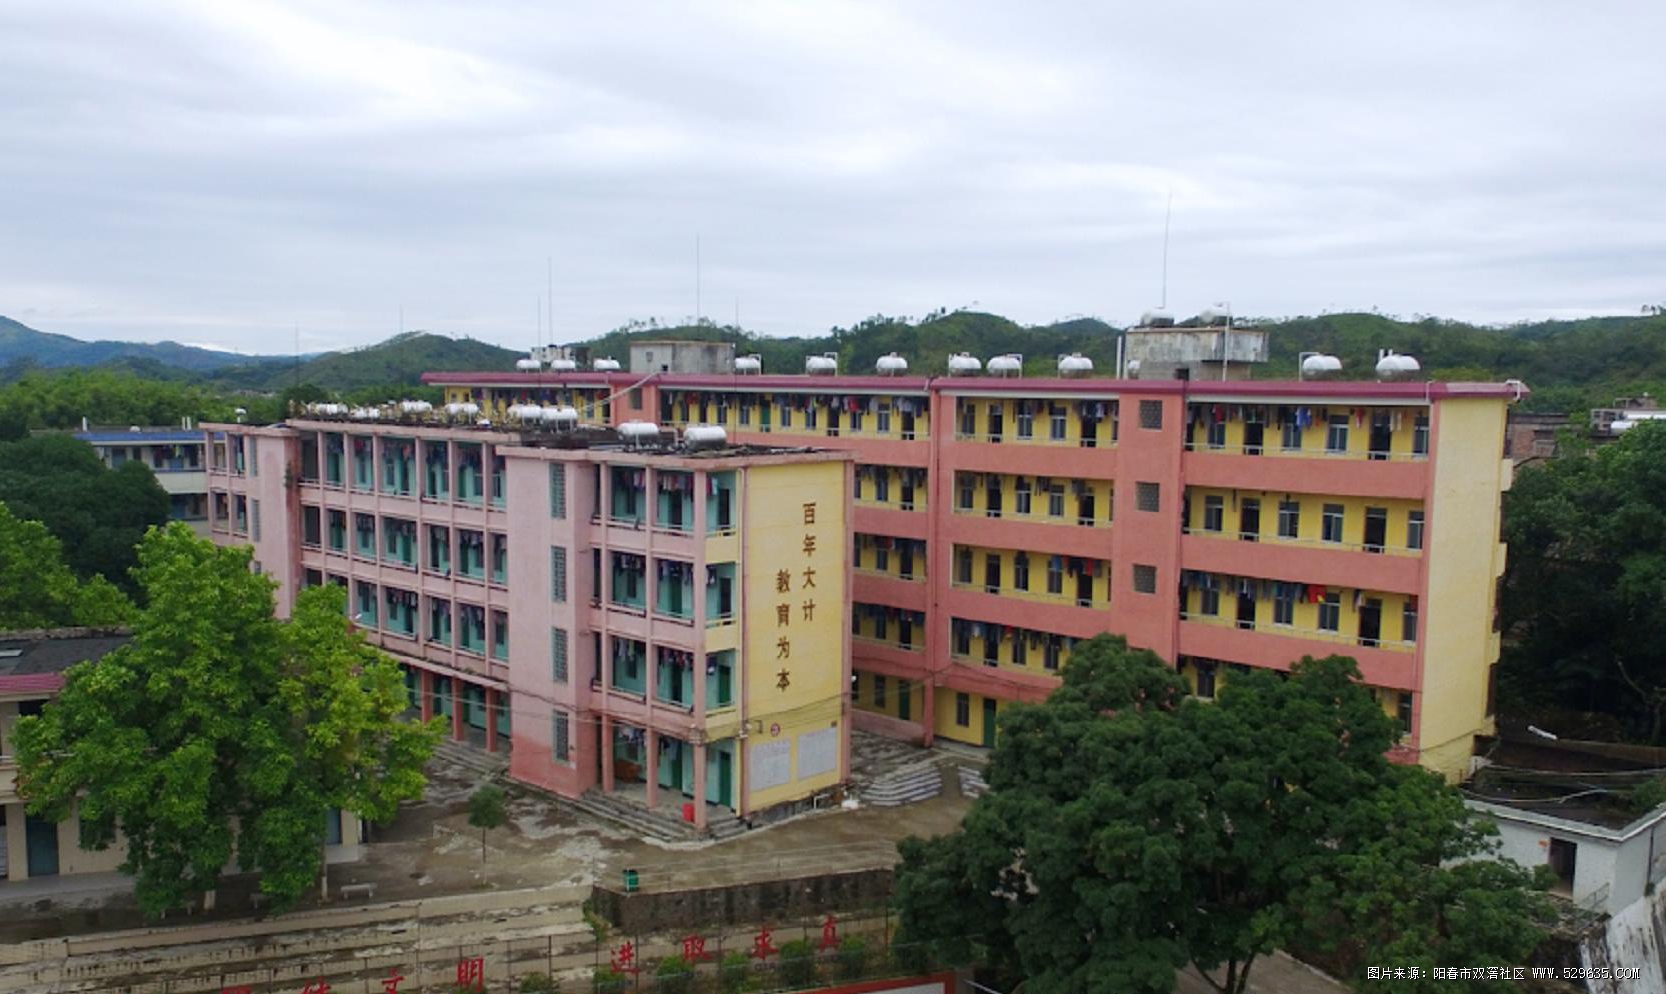 双滘中学是一所公办初级中学